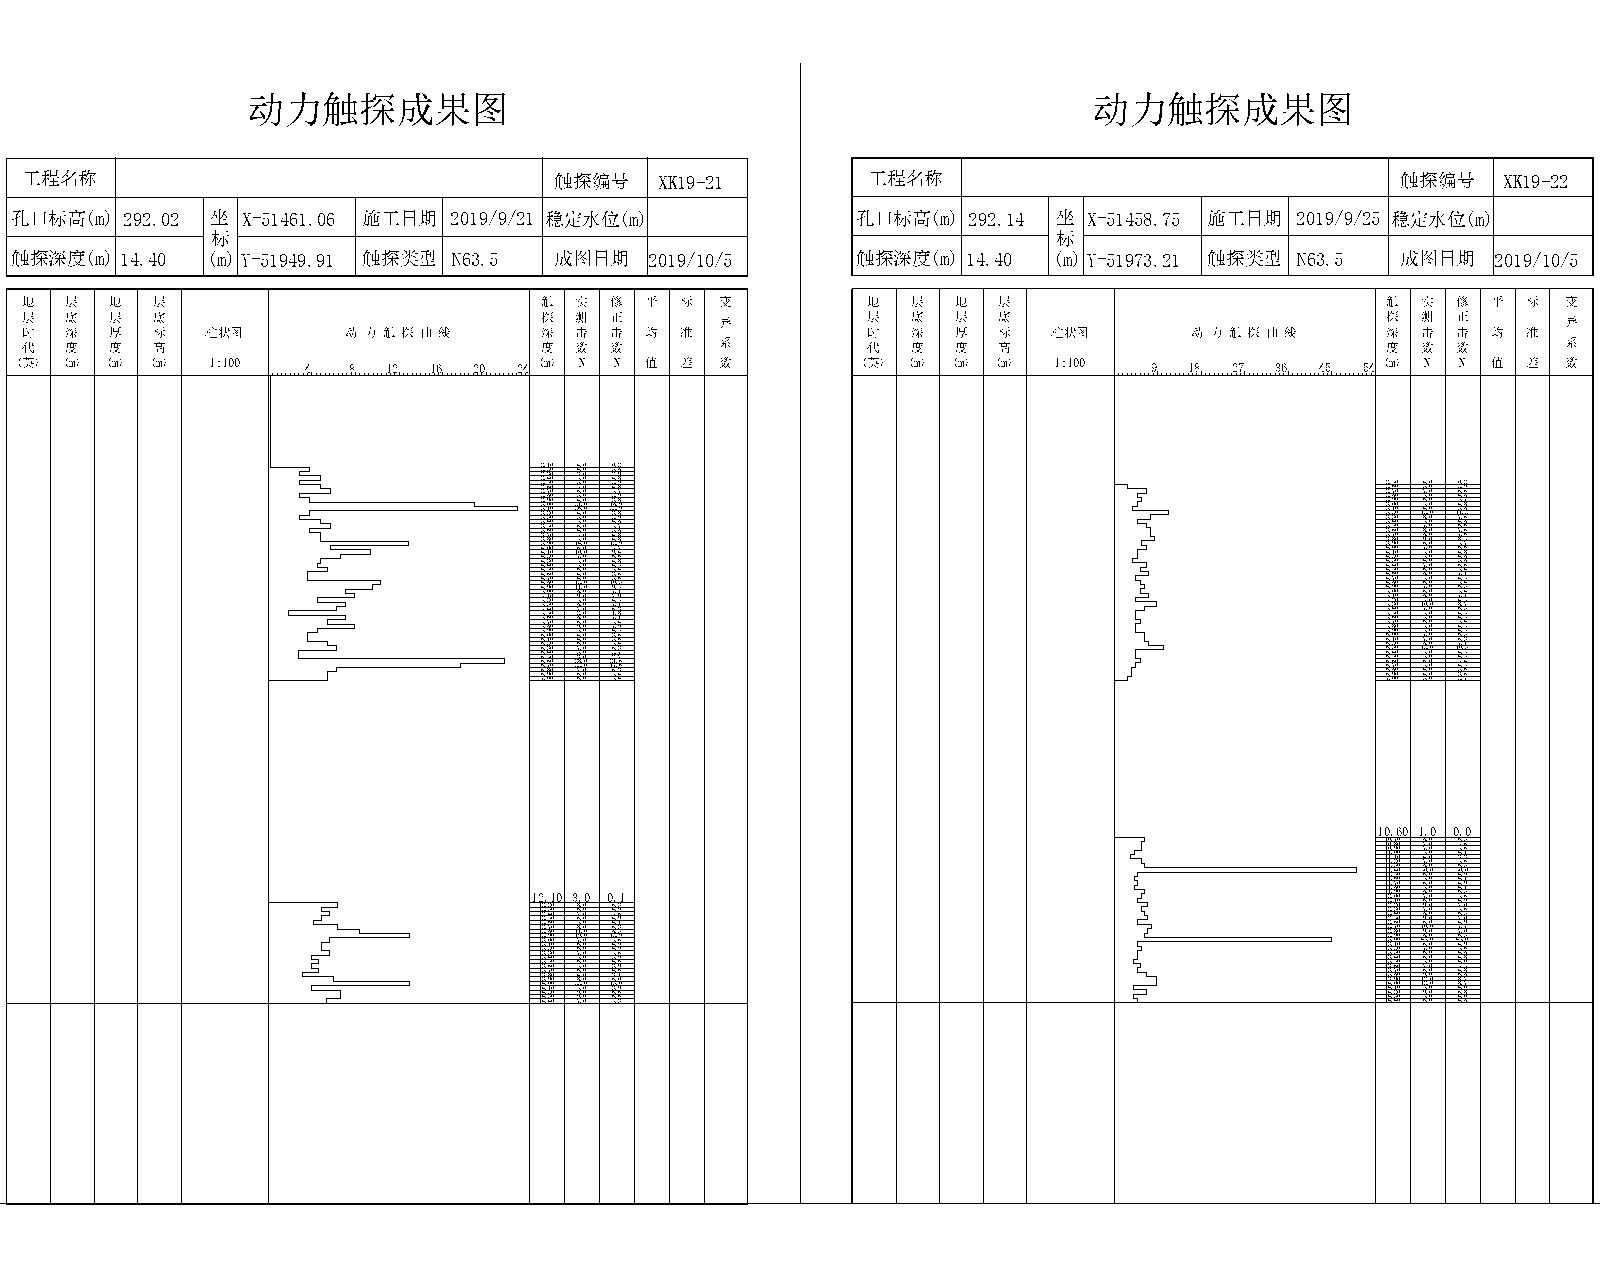 [重庆]隧道工程地质详细勘察报告(图表丰富)-动力触探成果图